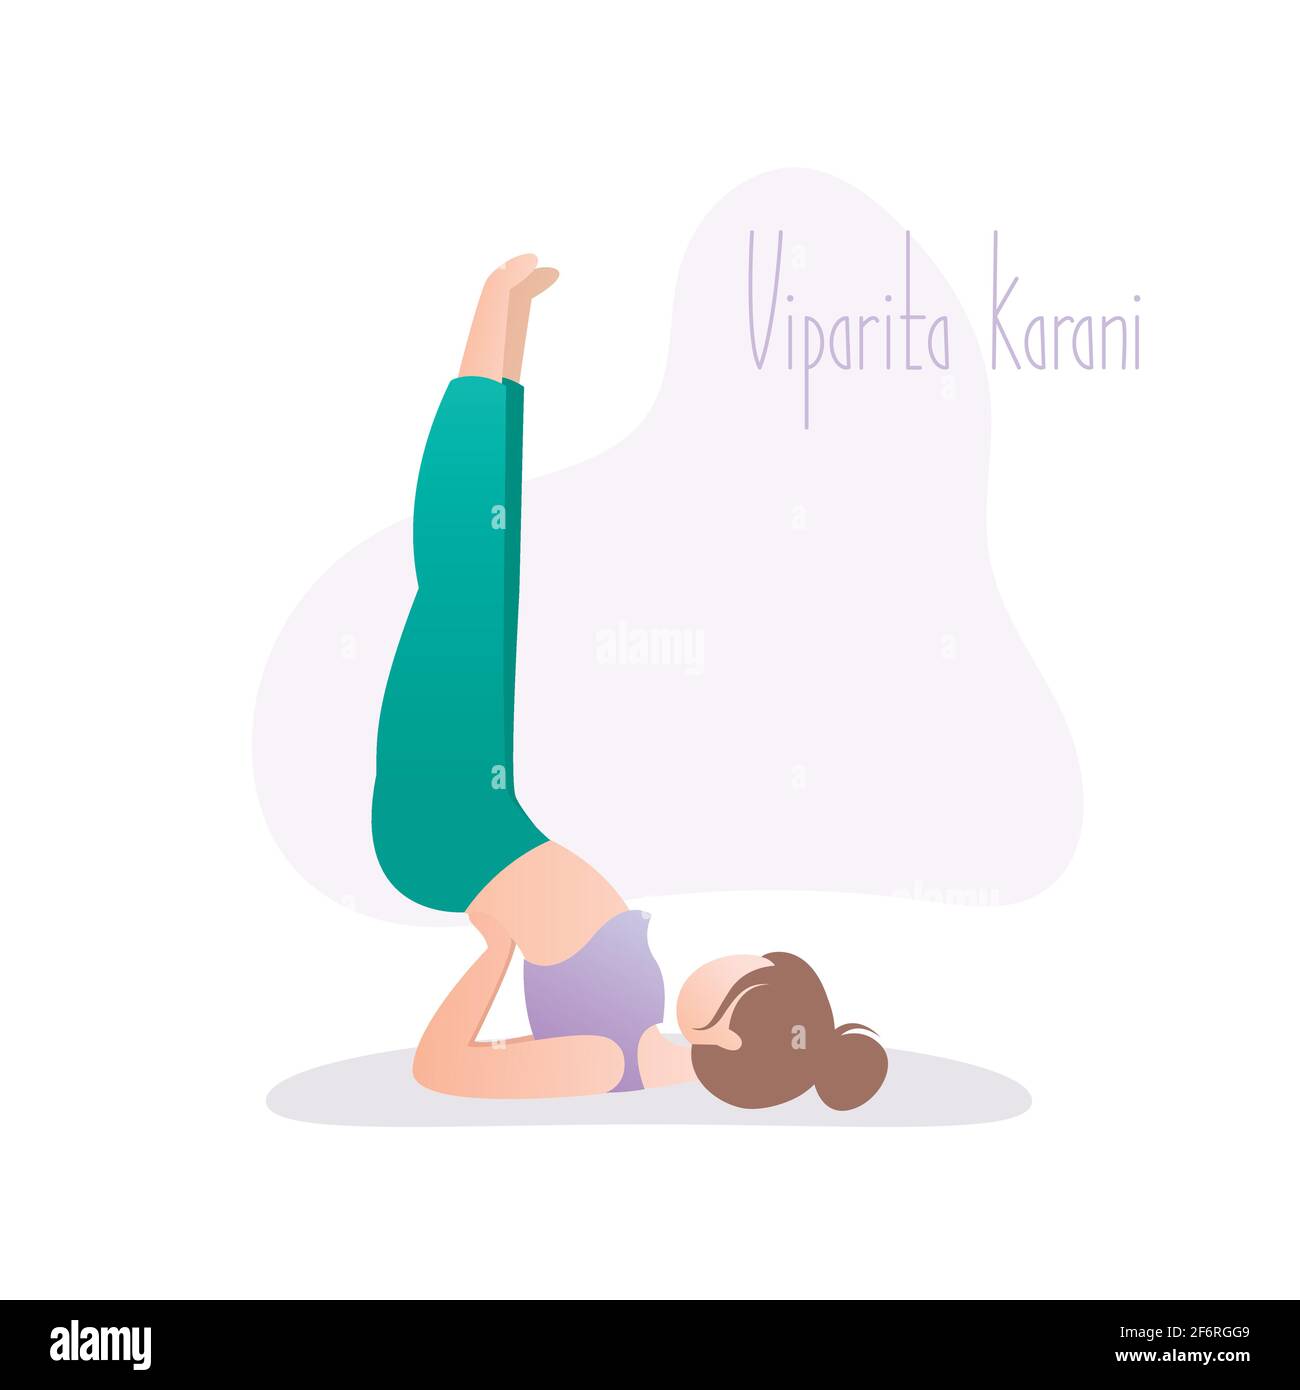 Ragazza che fa yoga posa, gambe sulla parete posa o Viparita Karani asana o mudra in hatha yoga, illustrazione vettoriale in trendy stile Illustrazione Vettoriale